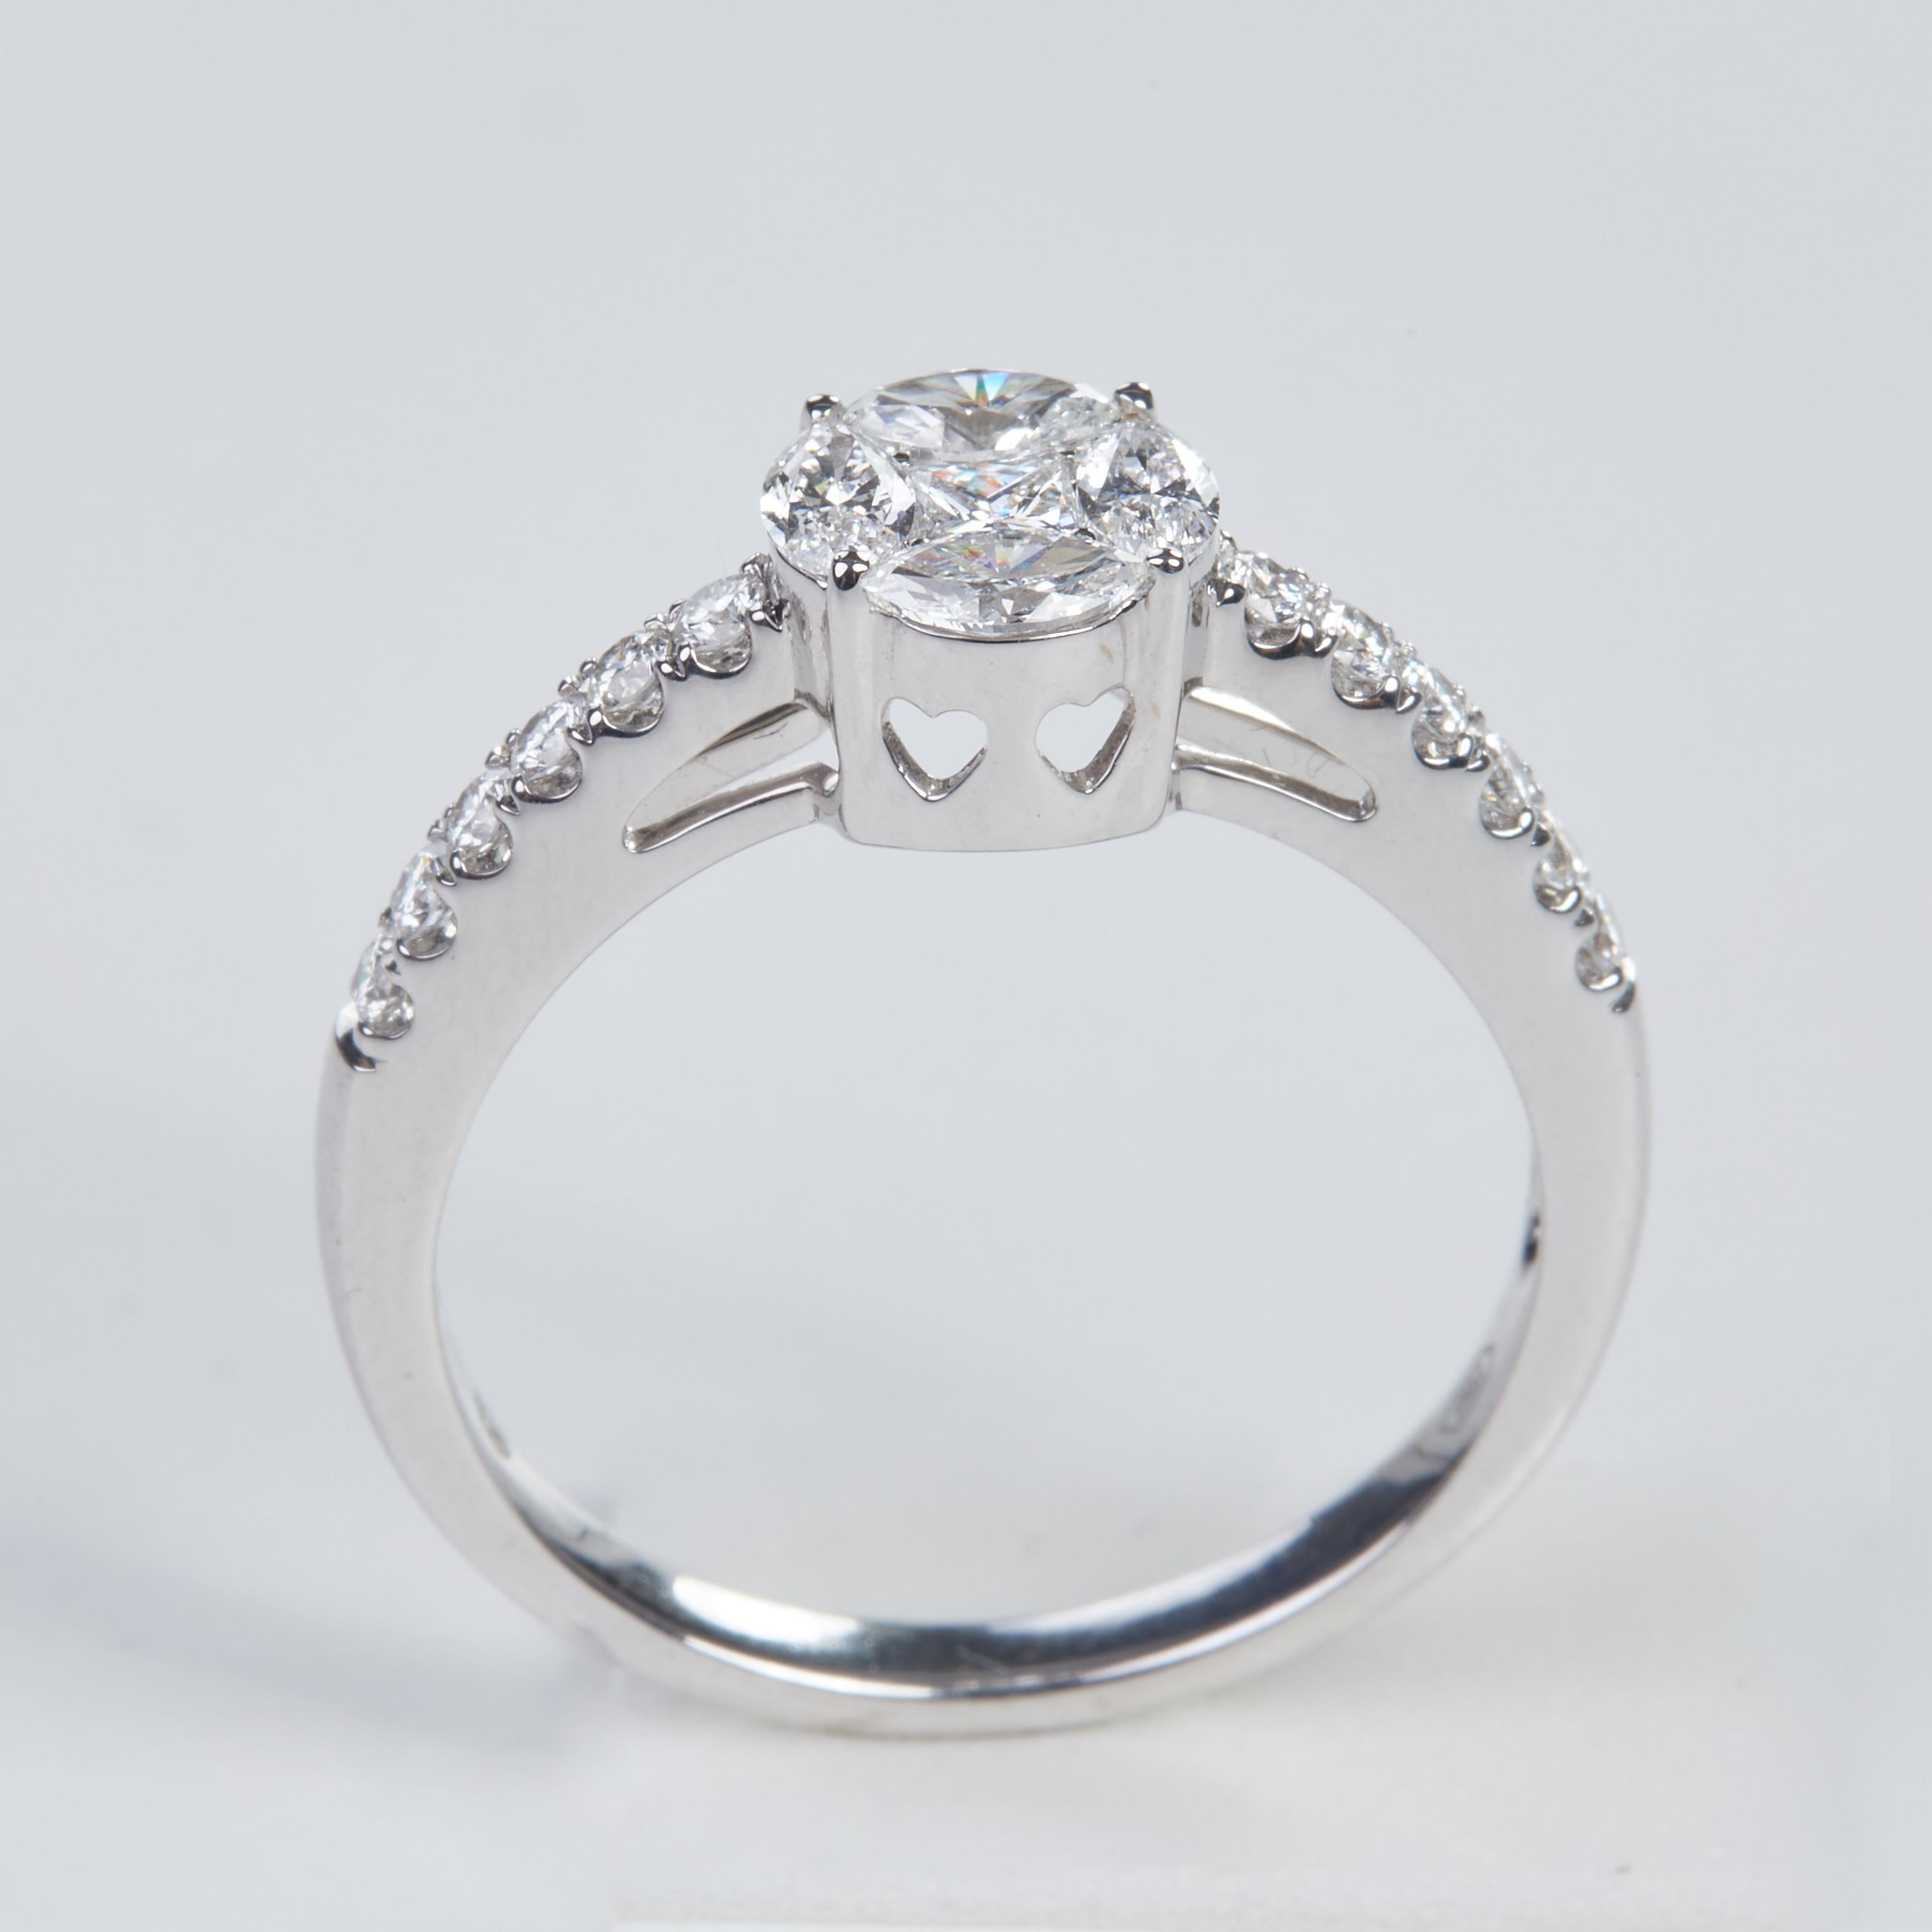 Mixed Cut 18 Karat White Gold Diamond Ring